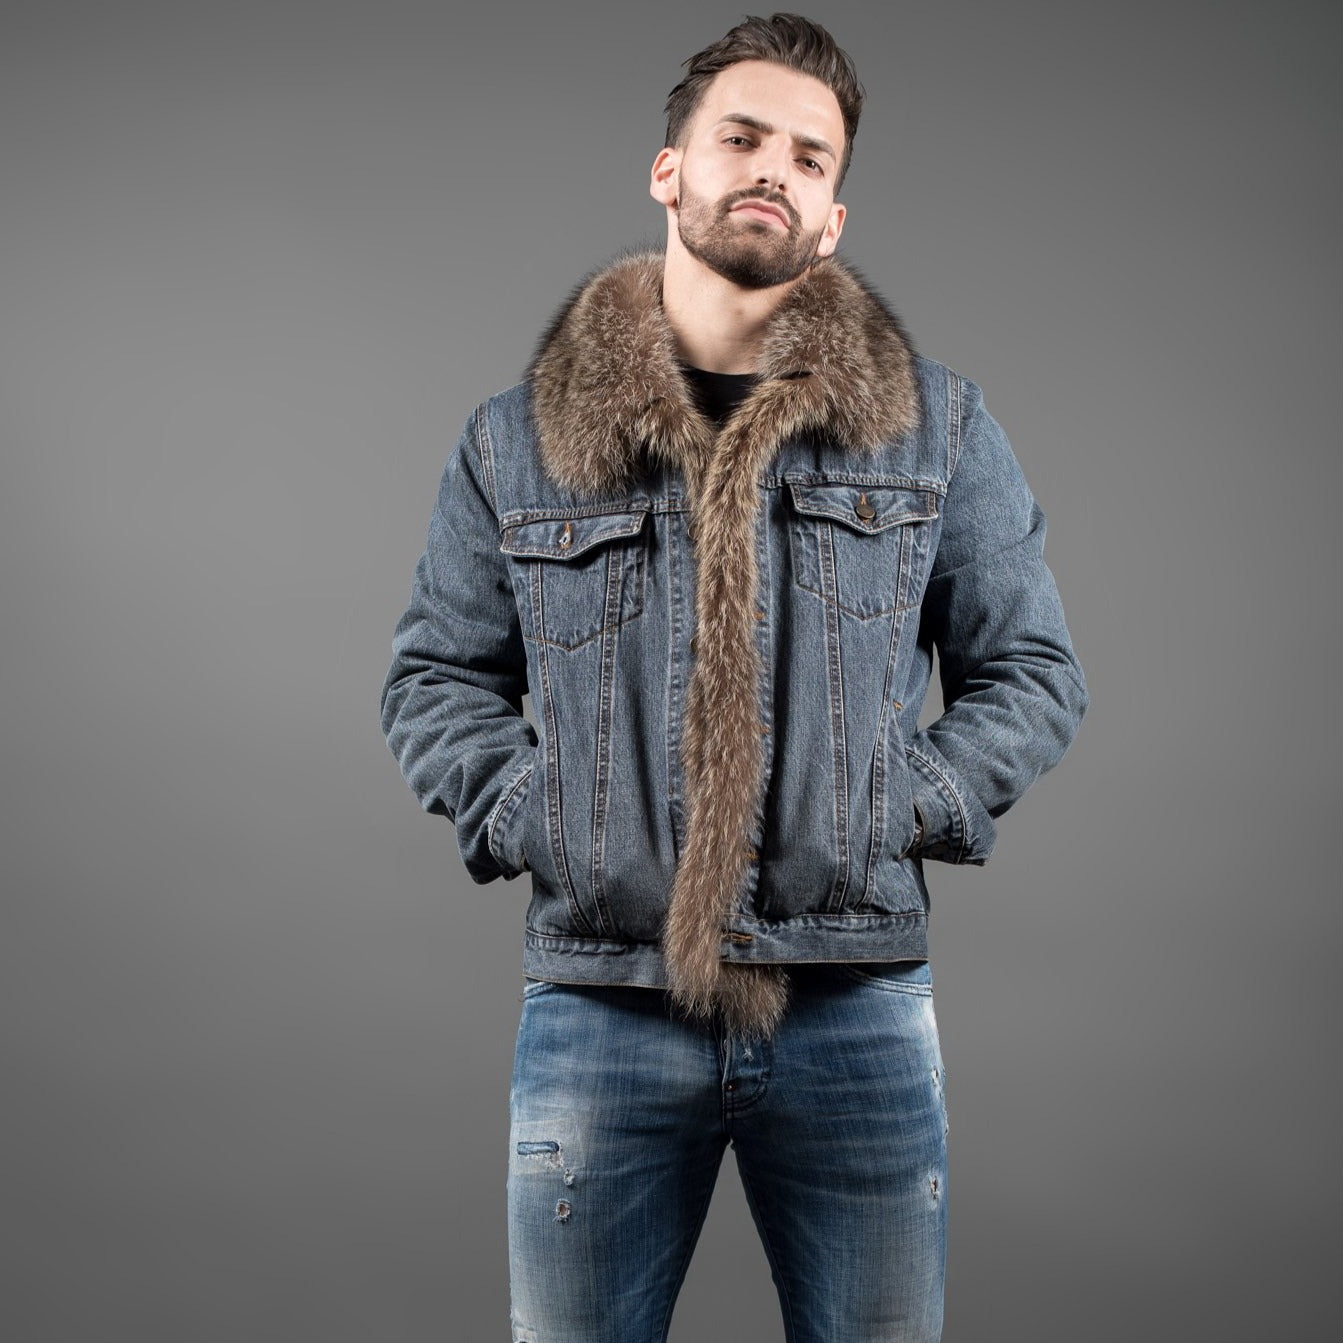 Skur Virksomhedsbeskrivelse tag på sightseeing Men's Denim jacket with fur – Fur Caravan